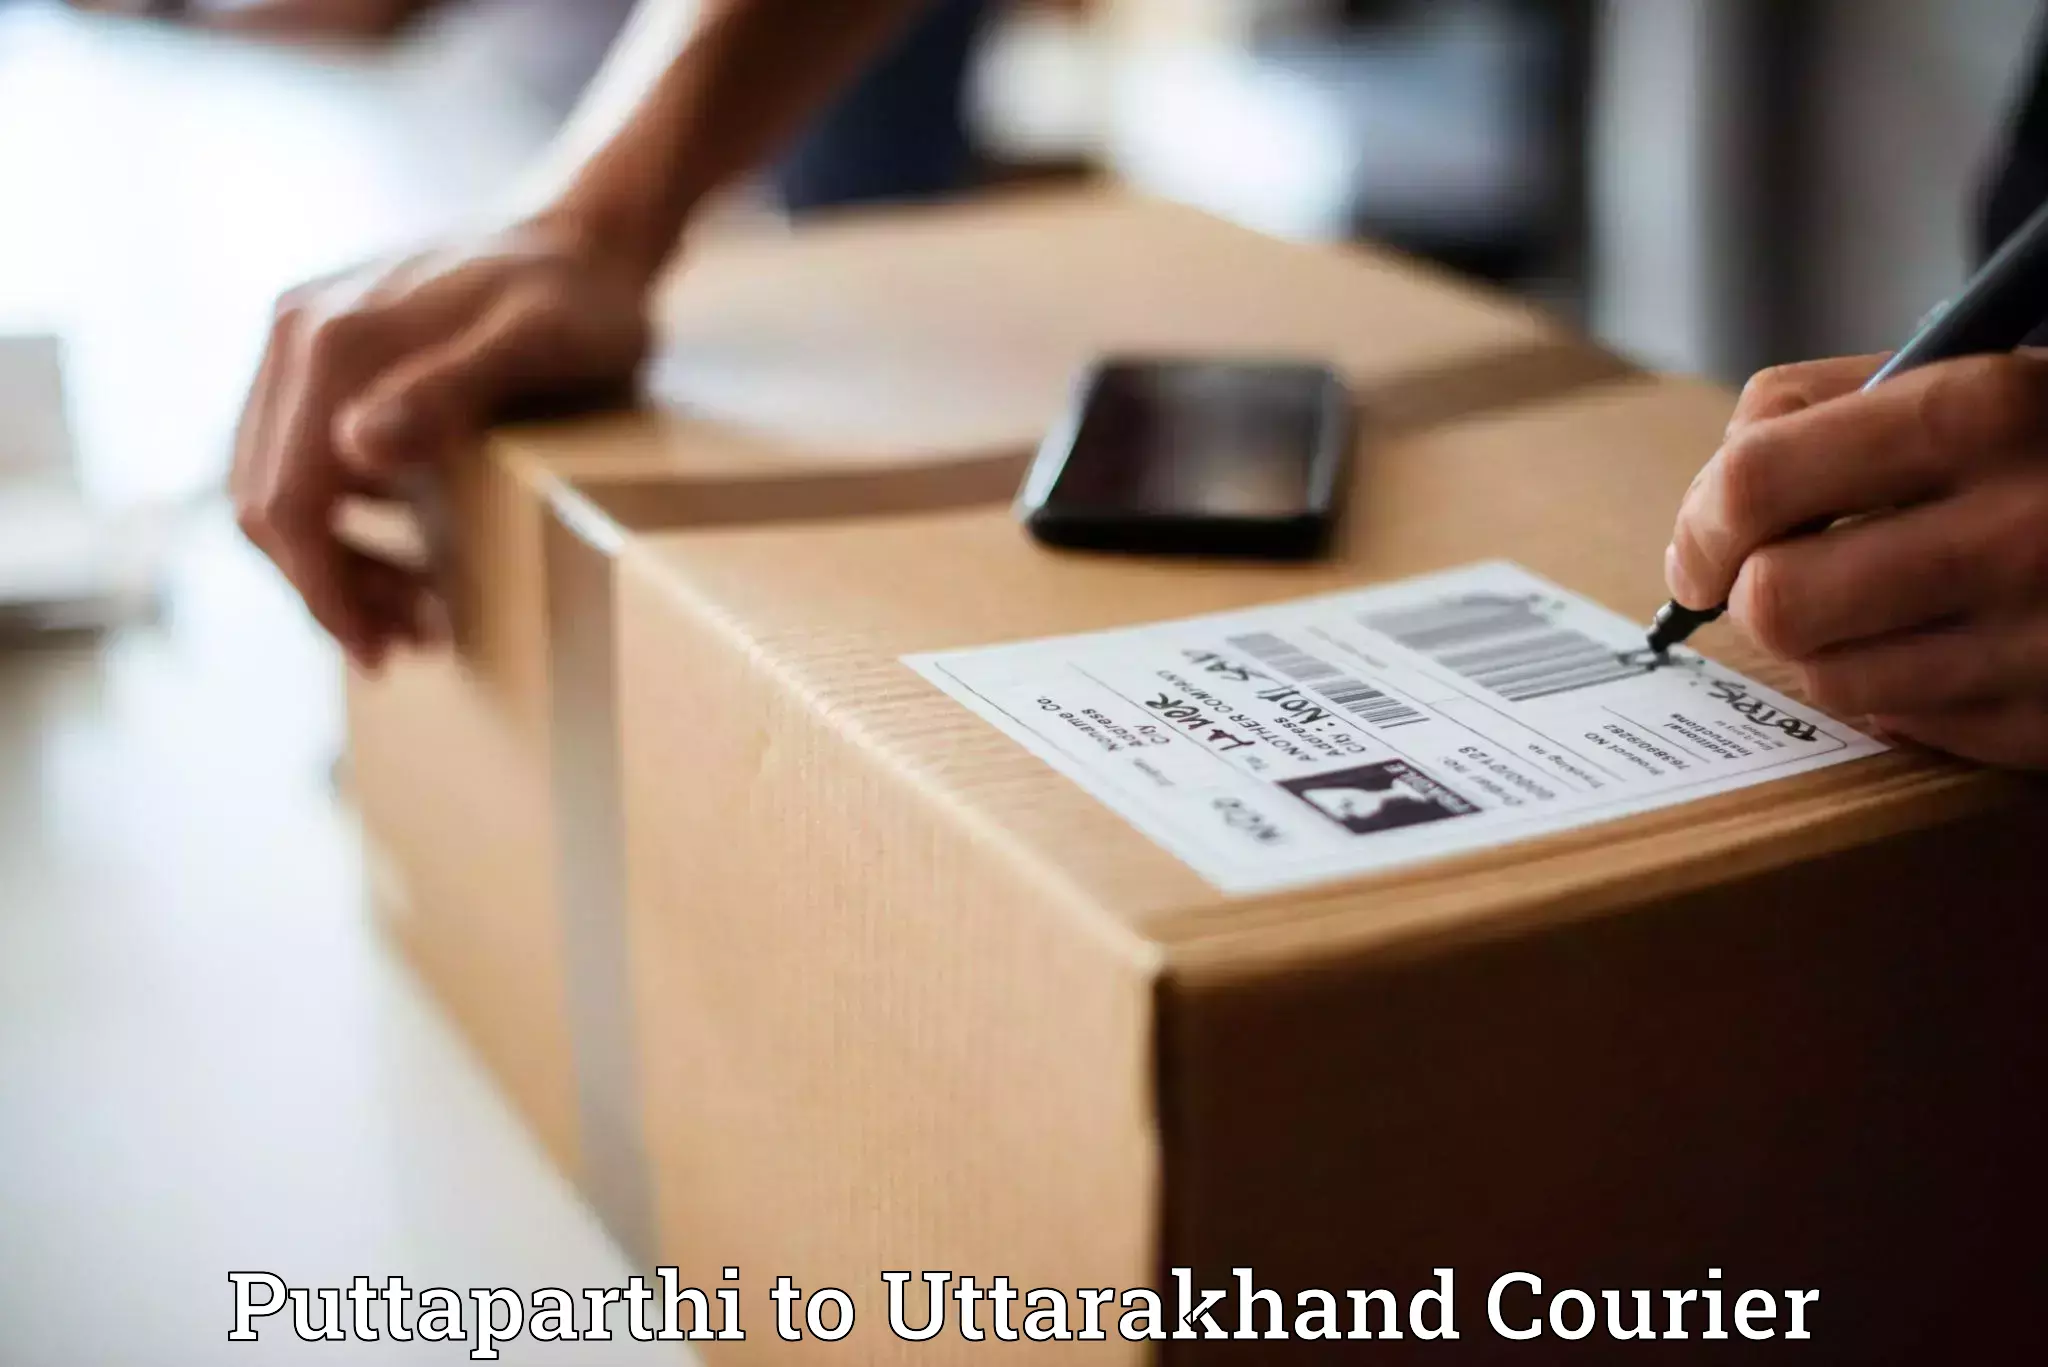 Flexible shipping options Puttaparthi to Dehradun